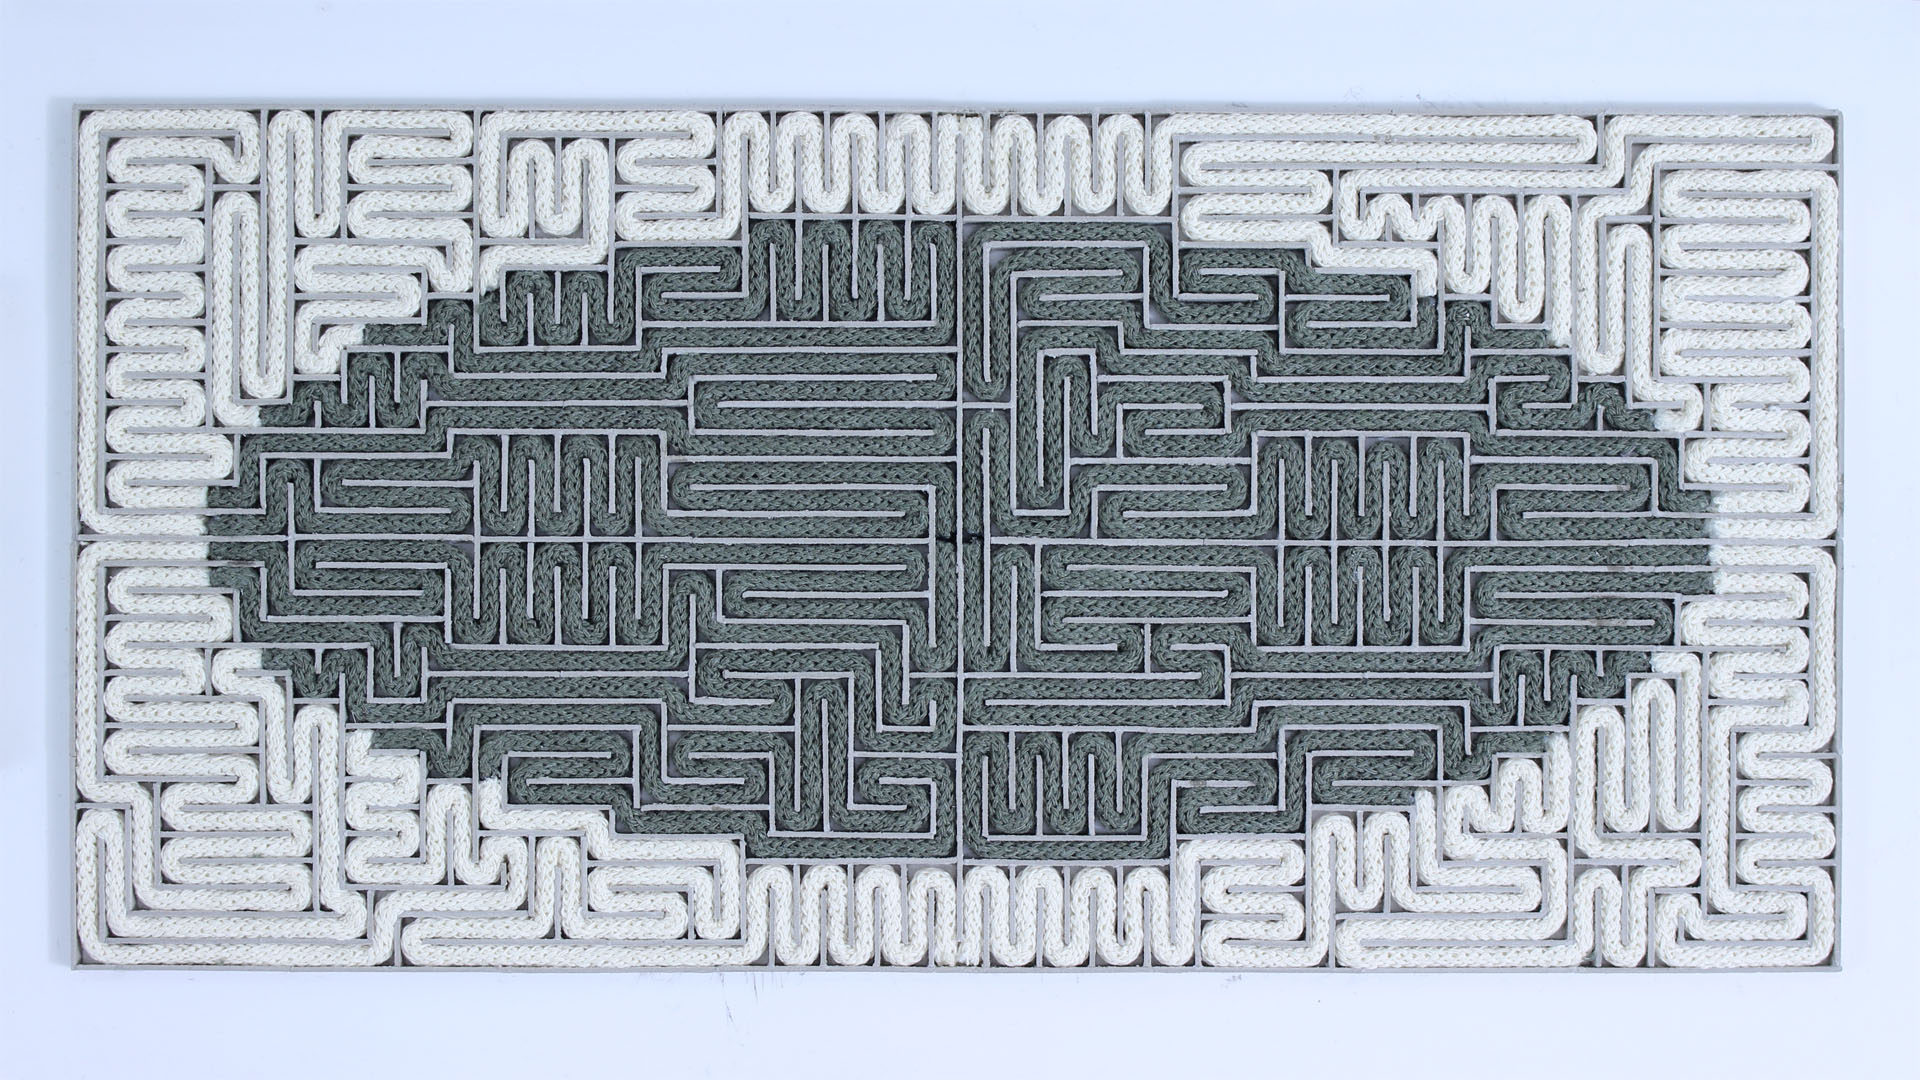 Instalacja przedstawiająca labirynt wypełniony dwoma sznurami w dwóch kolorach, jednym w środku, drugim okalającym go.